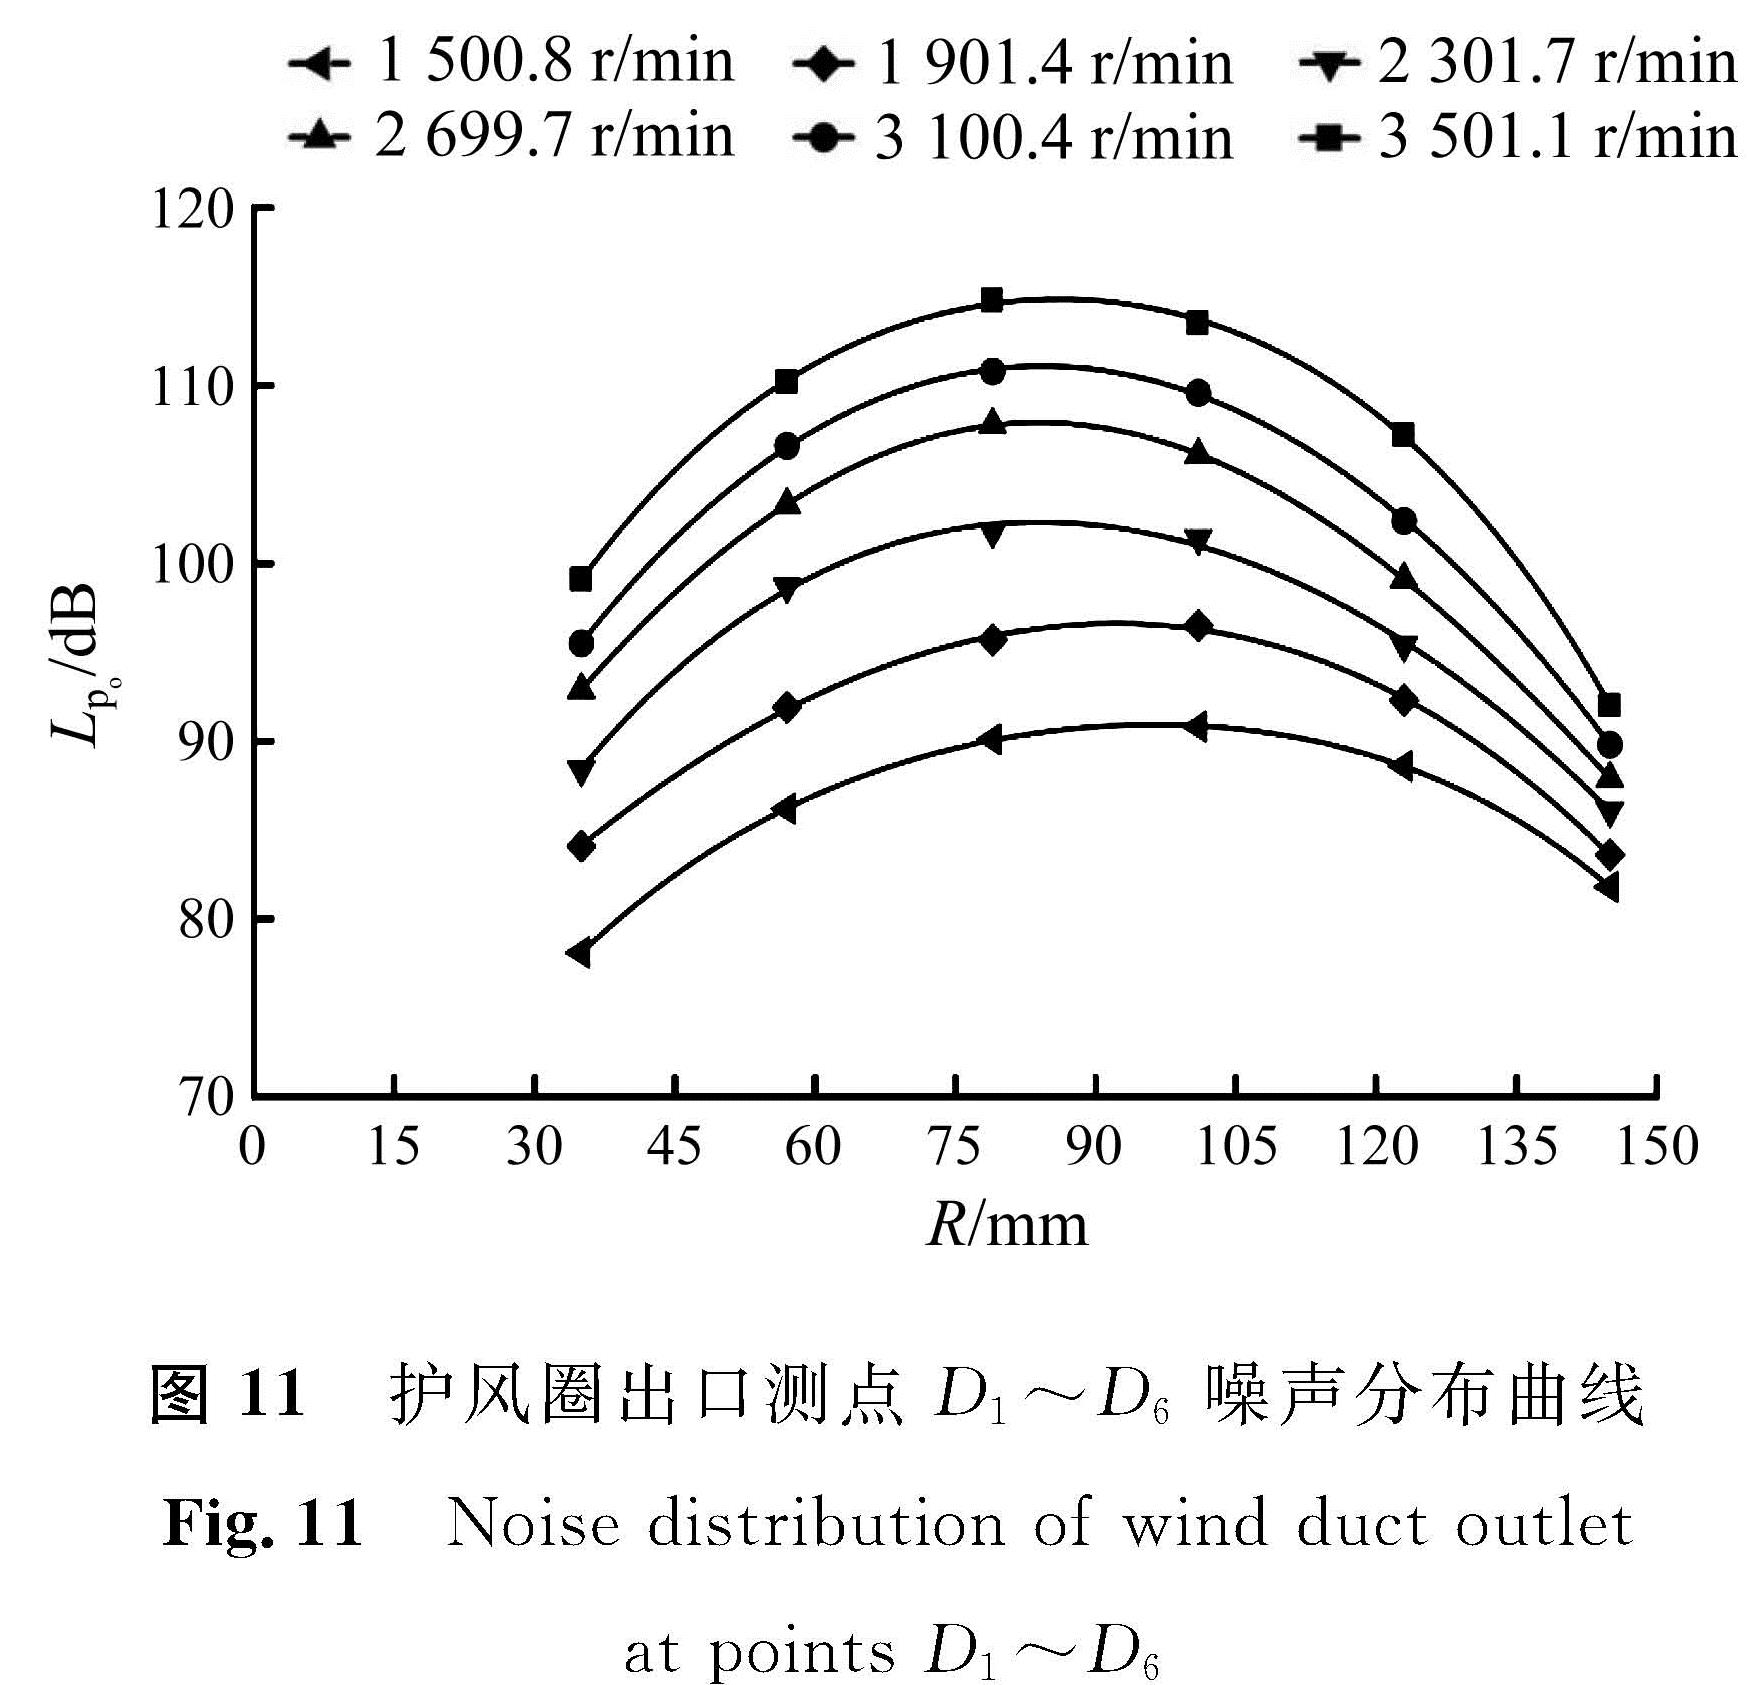 图 11 护风圈出口测点D1～D6噪声分布曲线<br/>Fig.11 Noise distribution of wind duct outlet at points D1～D6